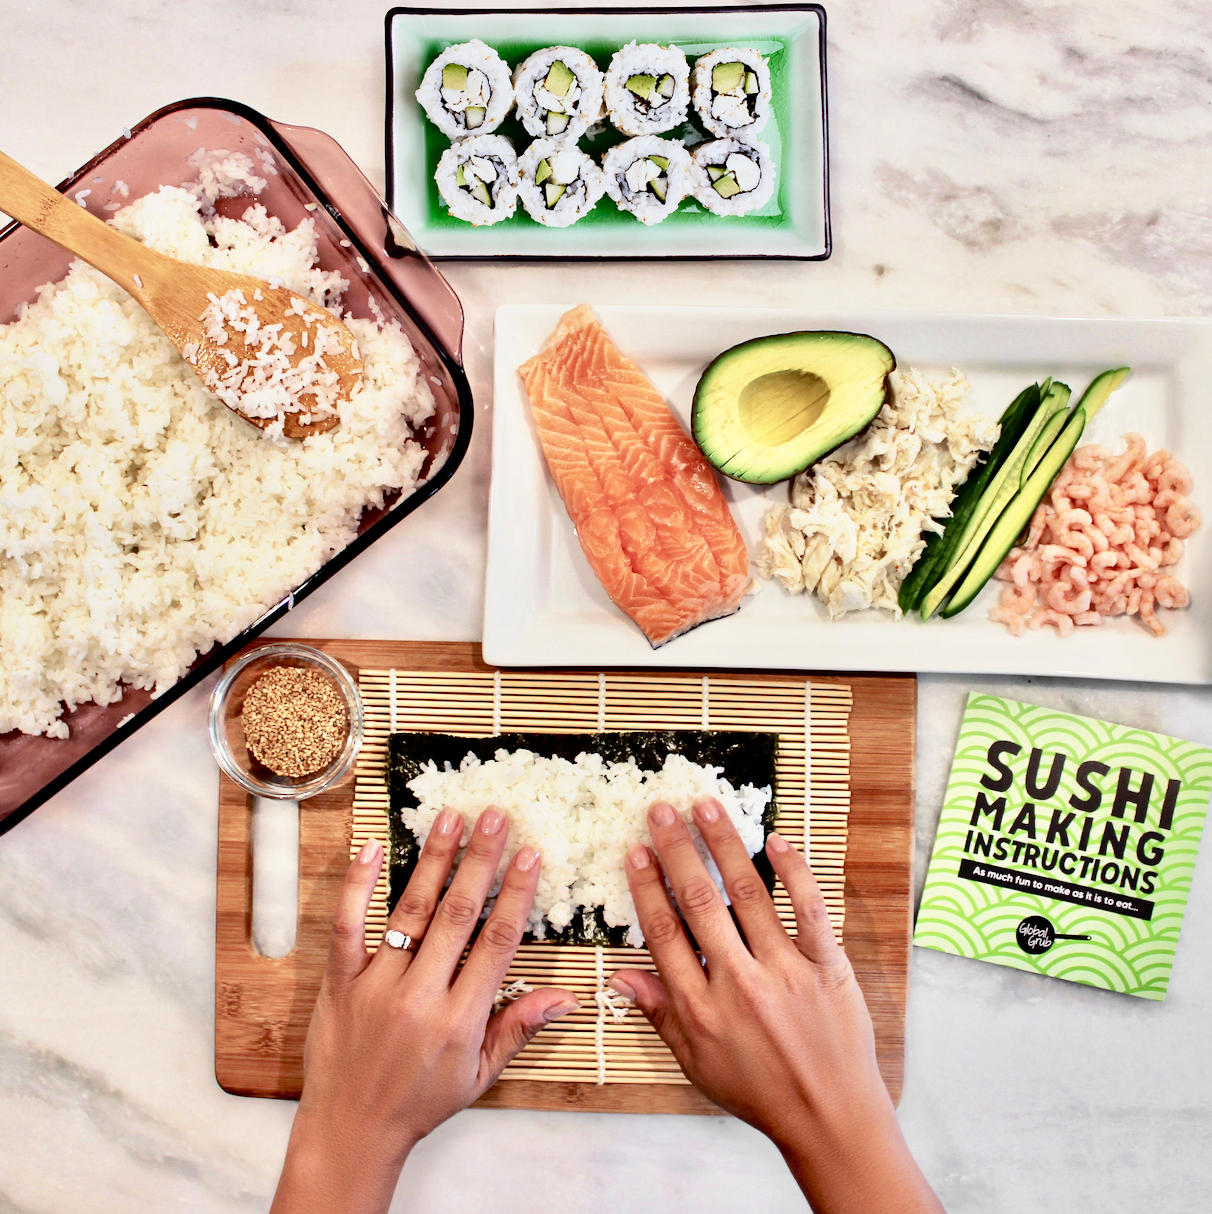 Make homemade sushi with this DIY Sushi Kit